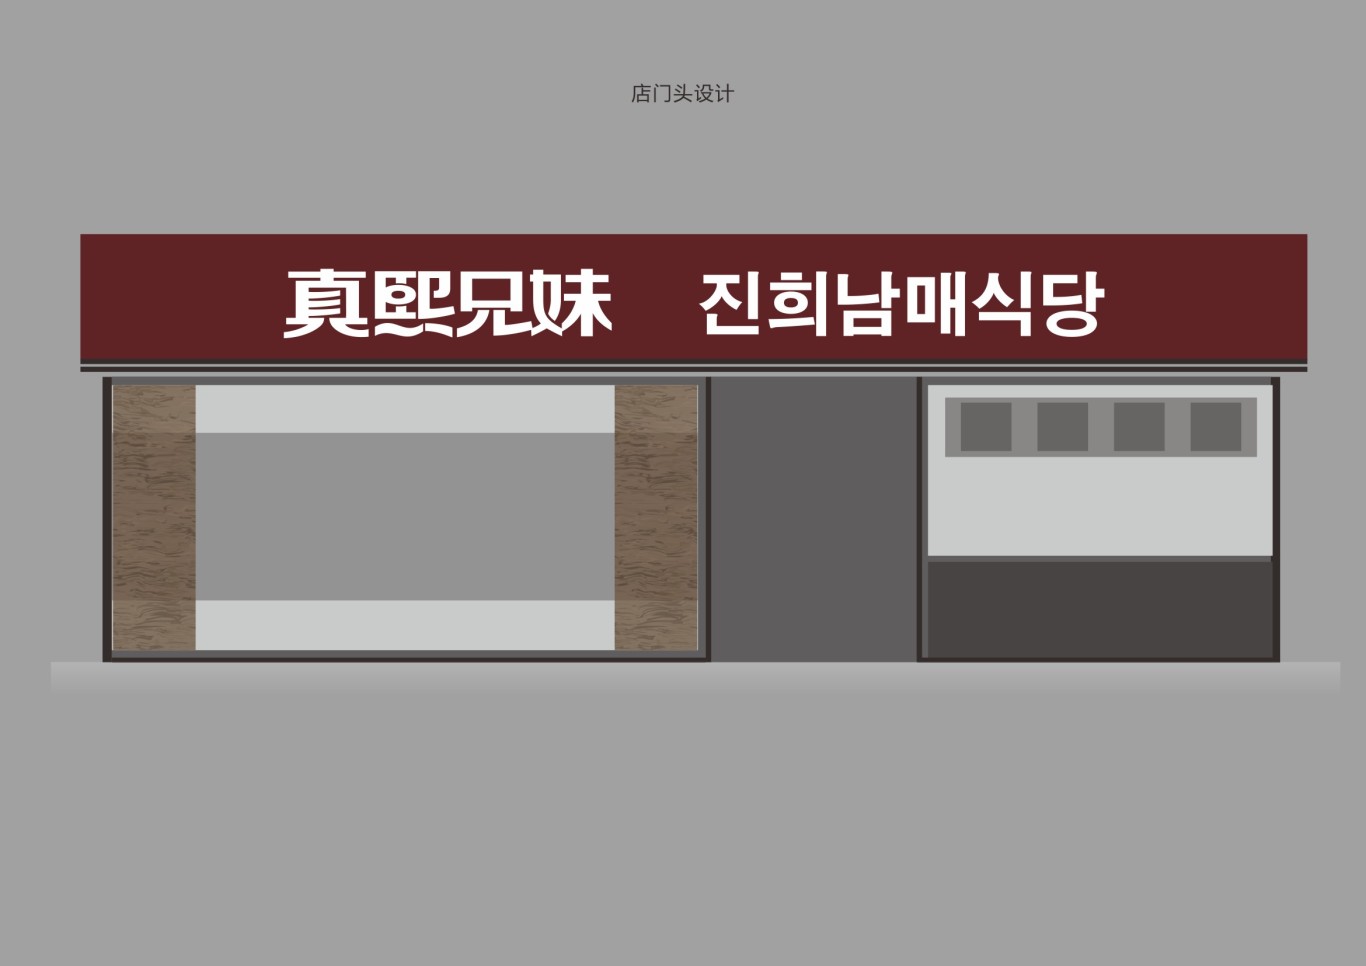 韩式简餐连锁品牌设计图18